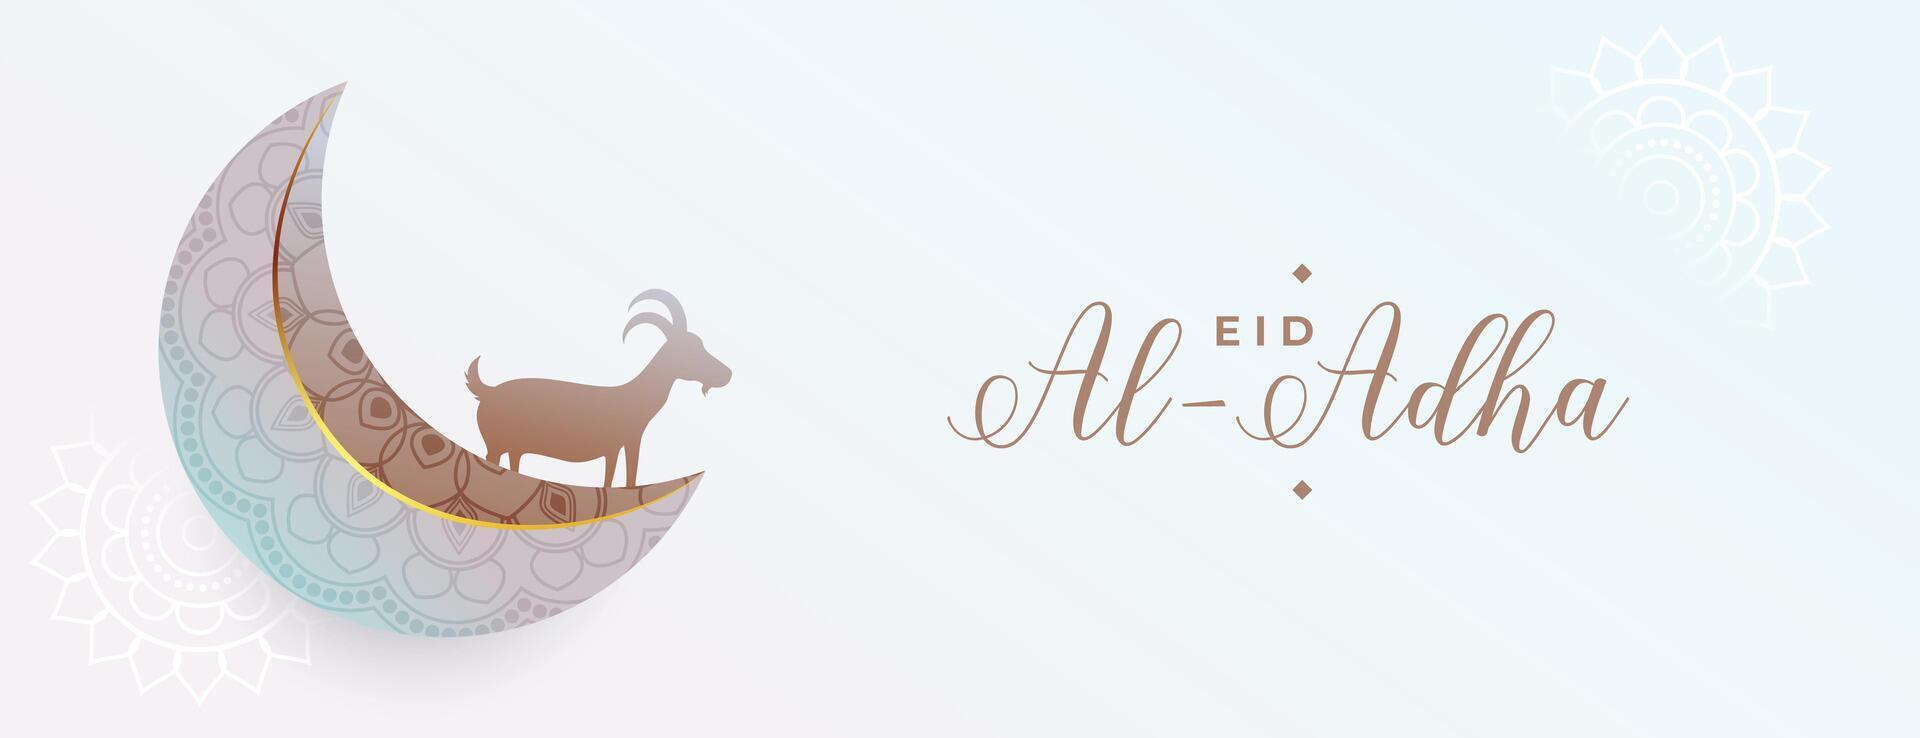 eid al adha Mubarak Festival Banner mit Halbmond Mond und Ziege vektor